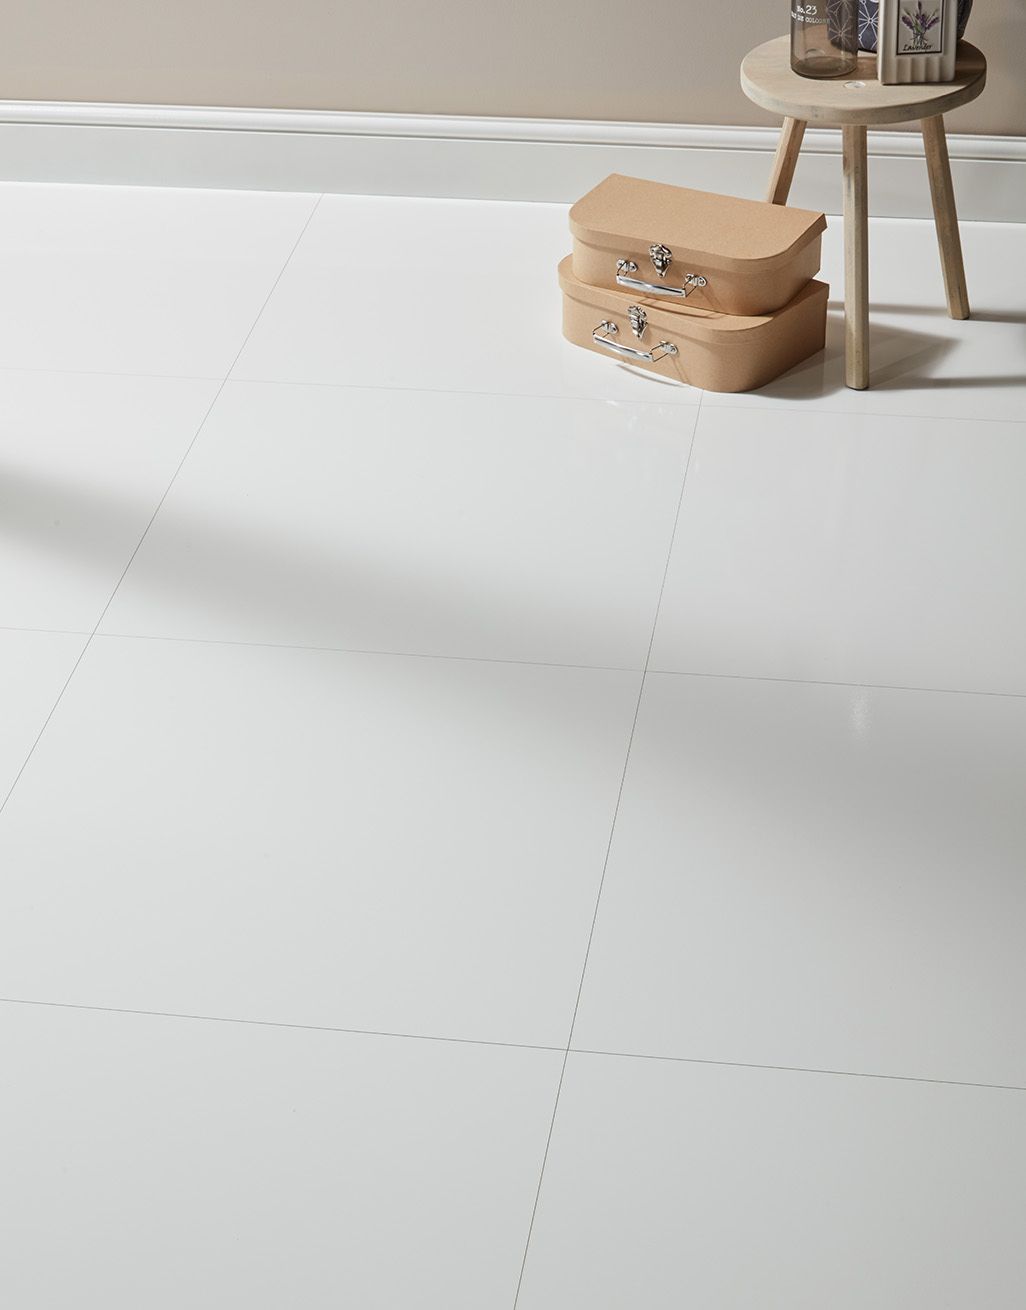 High Gloss Laminate Flooring, White Tile Effect Laminate Flooring